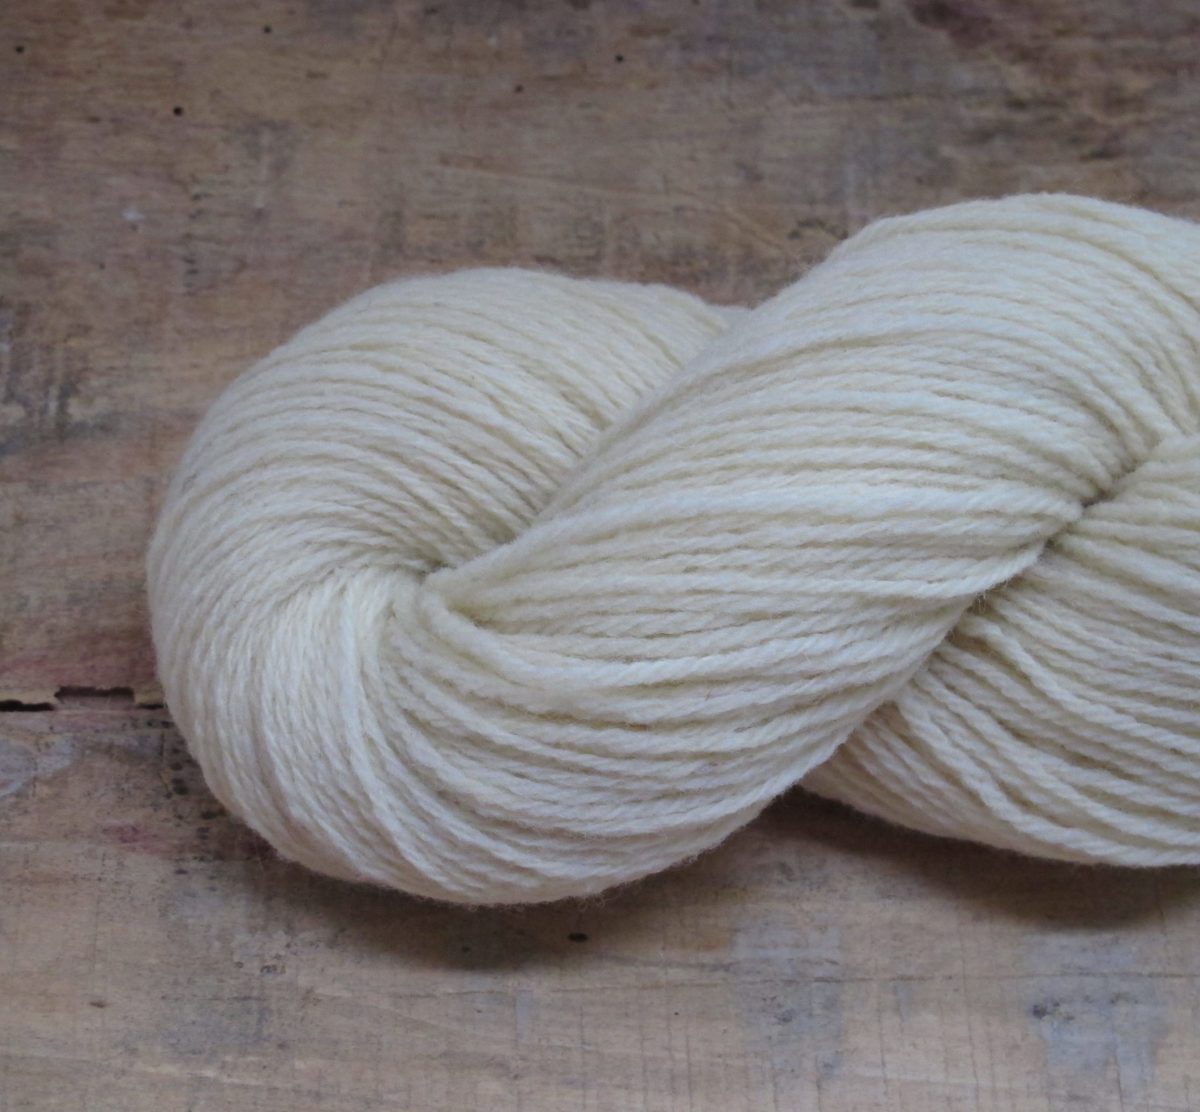 Pure laine naturelle France bio aiguilles 3,5